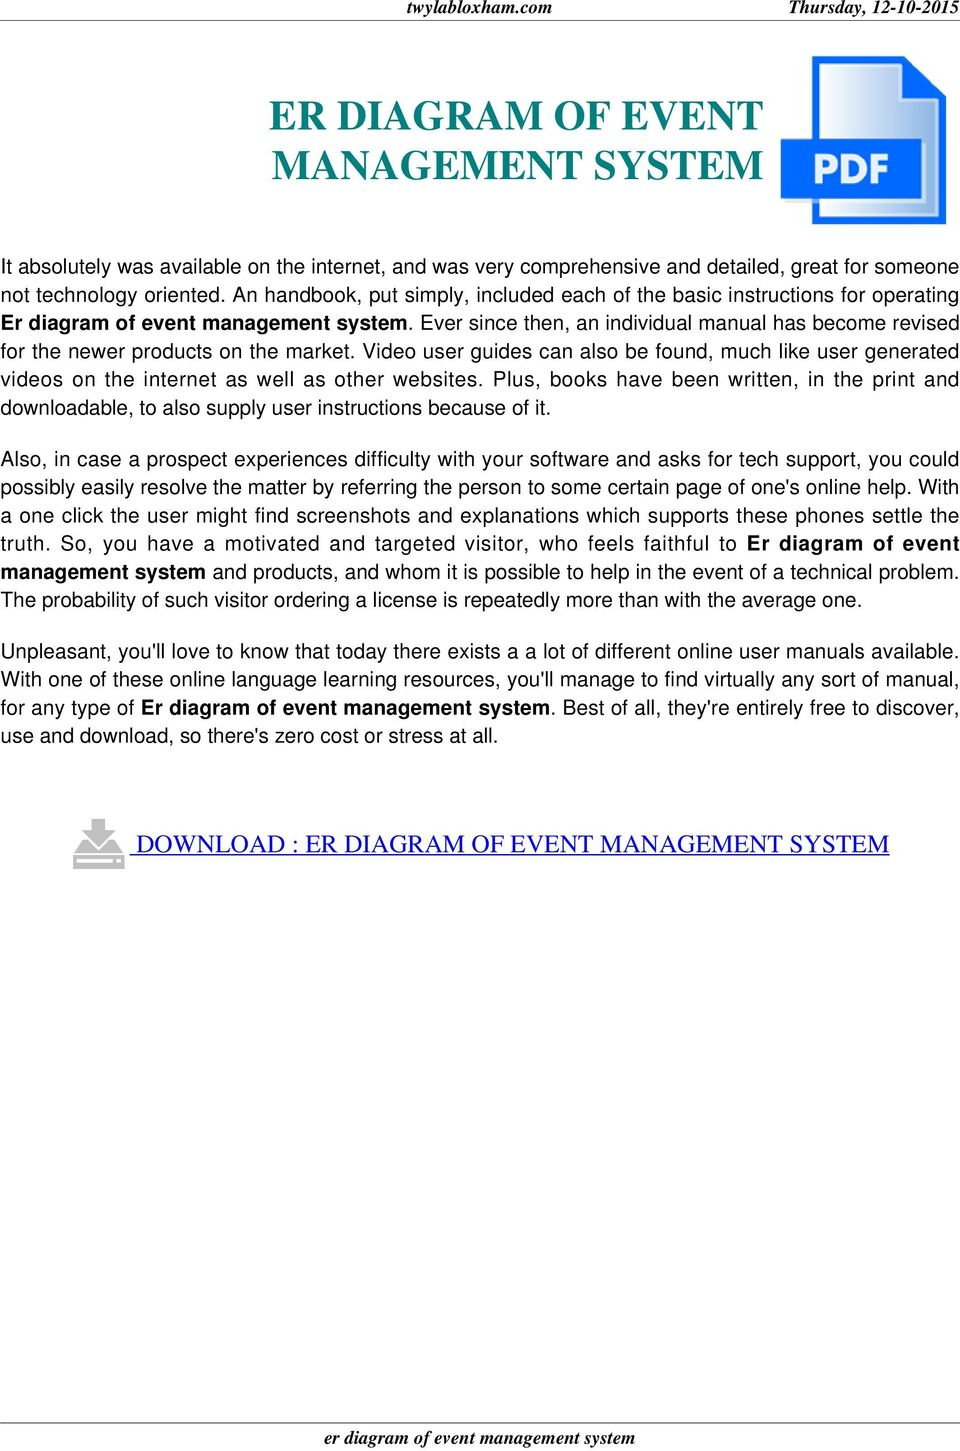 Er Diagram Of Event Management System - Pdf with Er Diagram Pdf